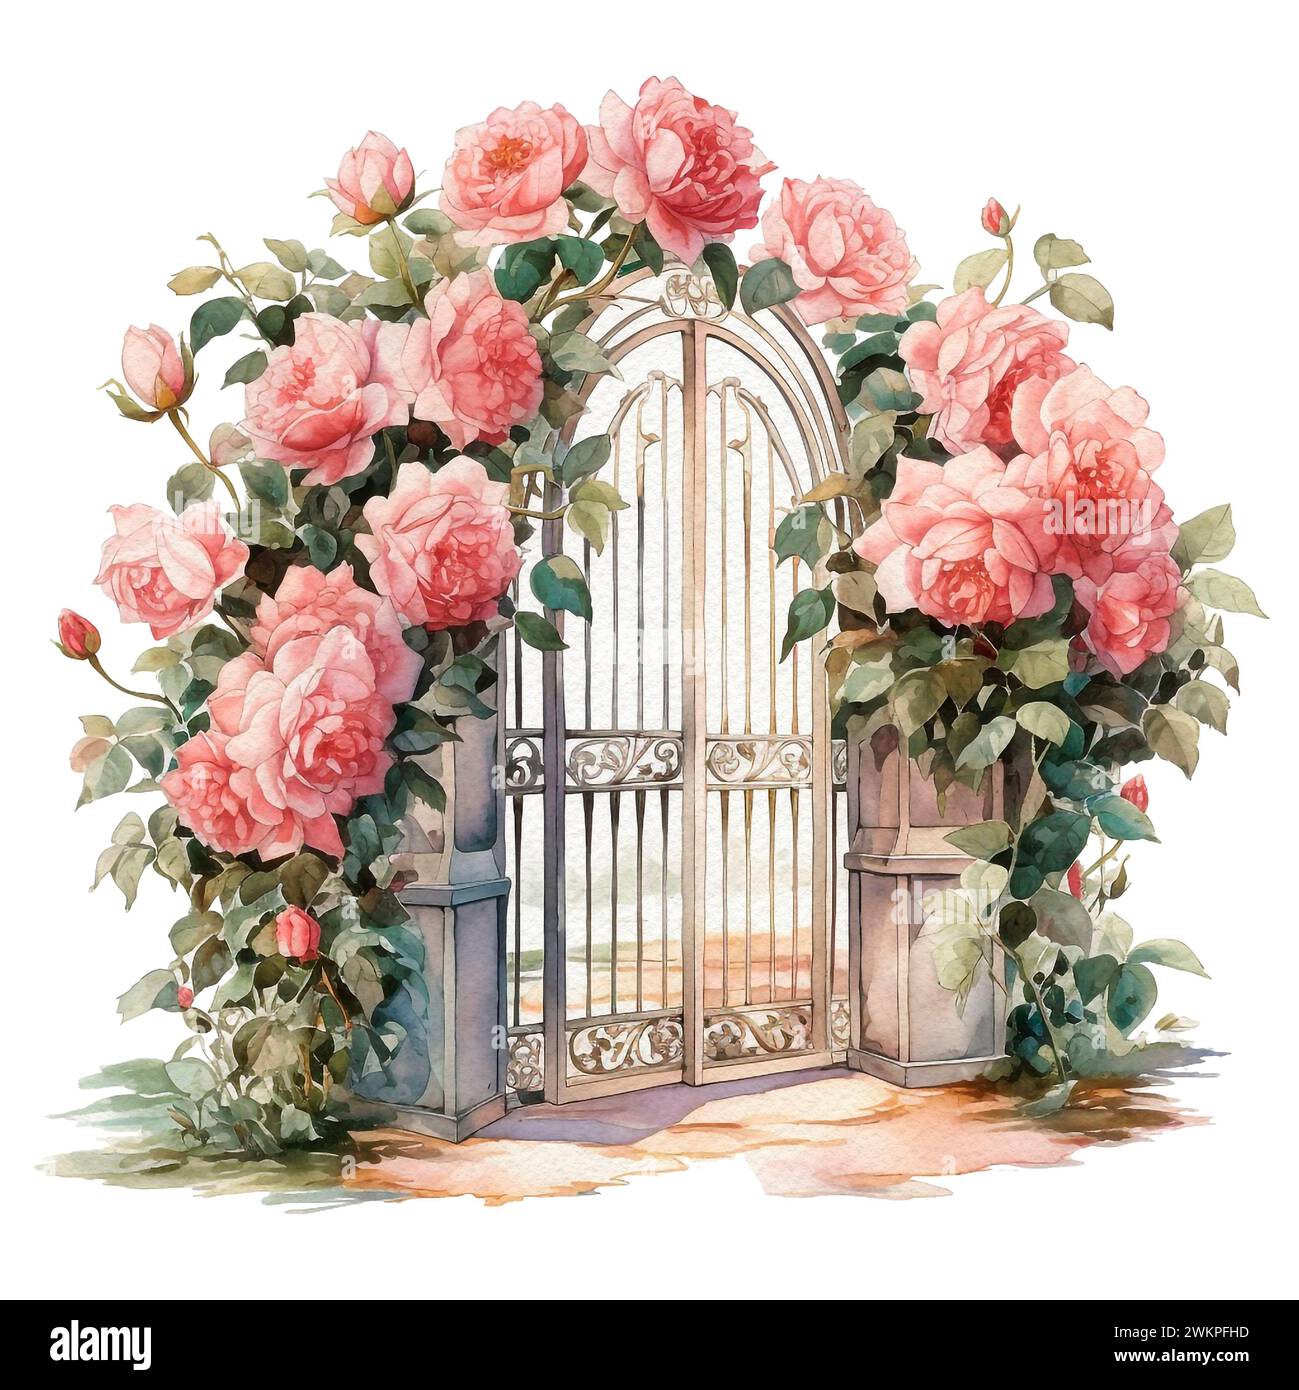 Arco nuziale in giardino di fiori teneri, rami e foglie. Illustrazione ad acquerello dipinta a mano. Foto Stock